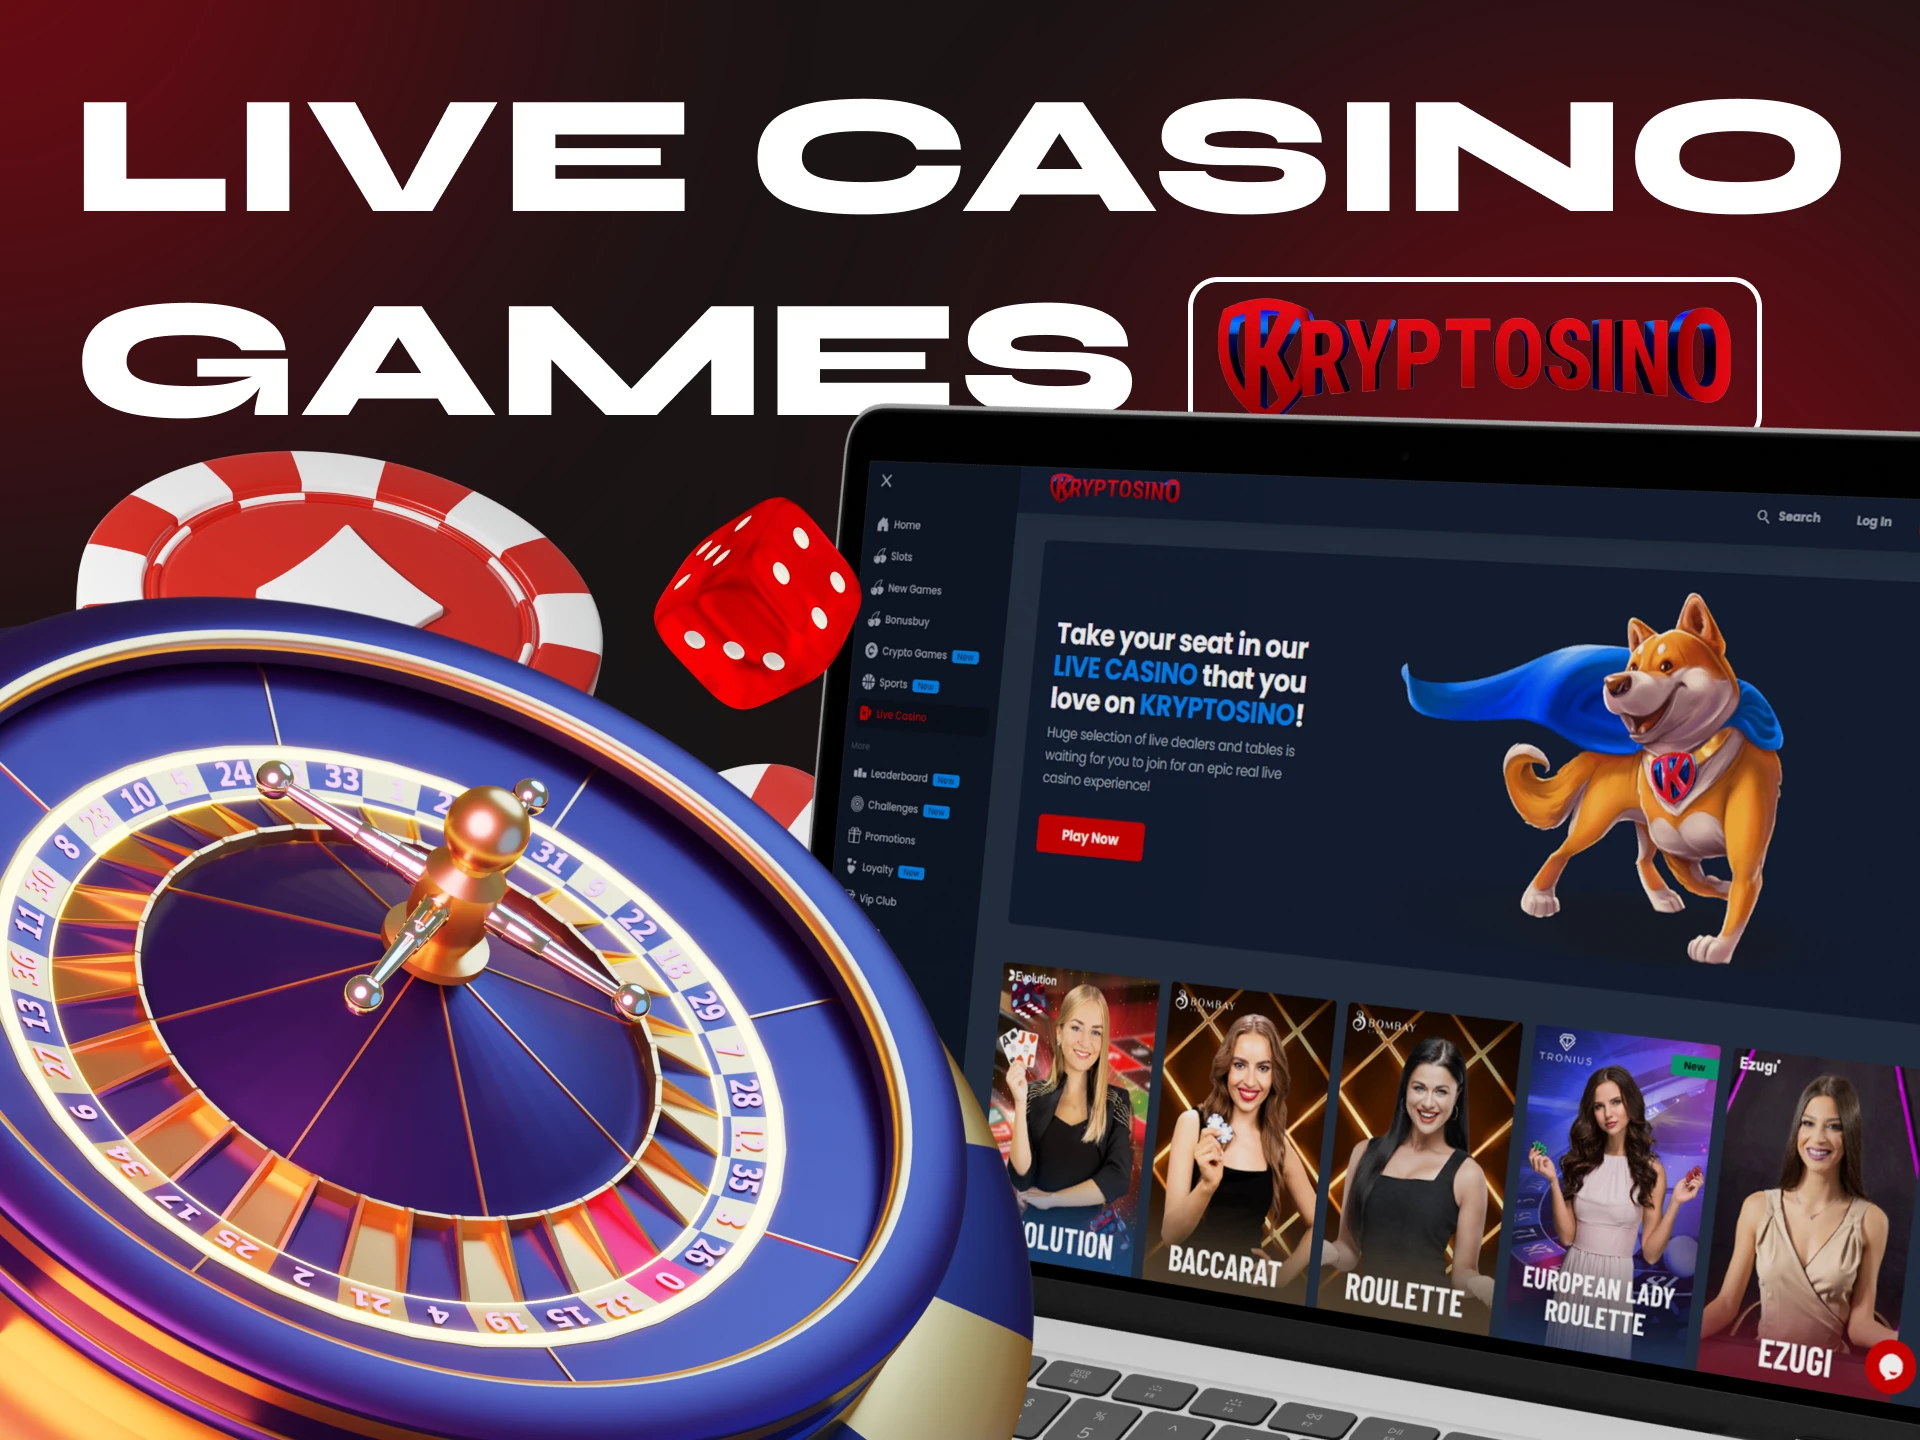 Try playing live casino games on Kryptosino.